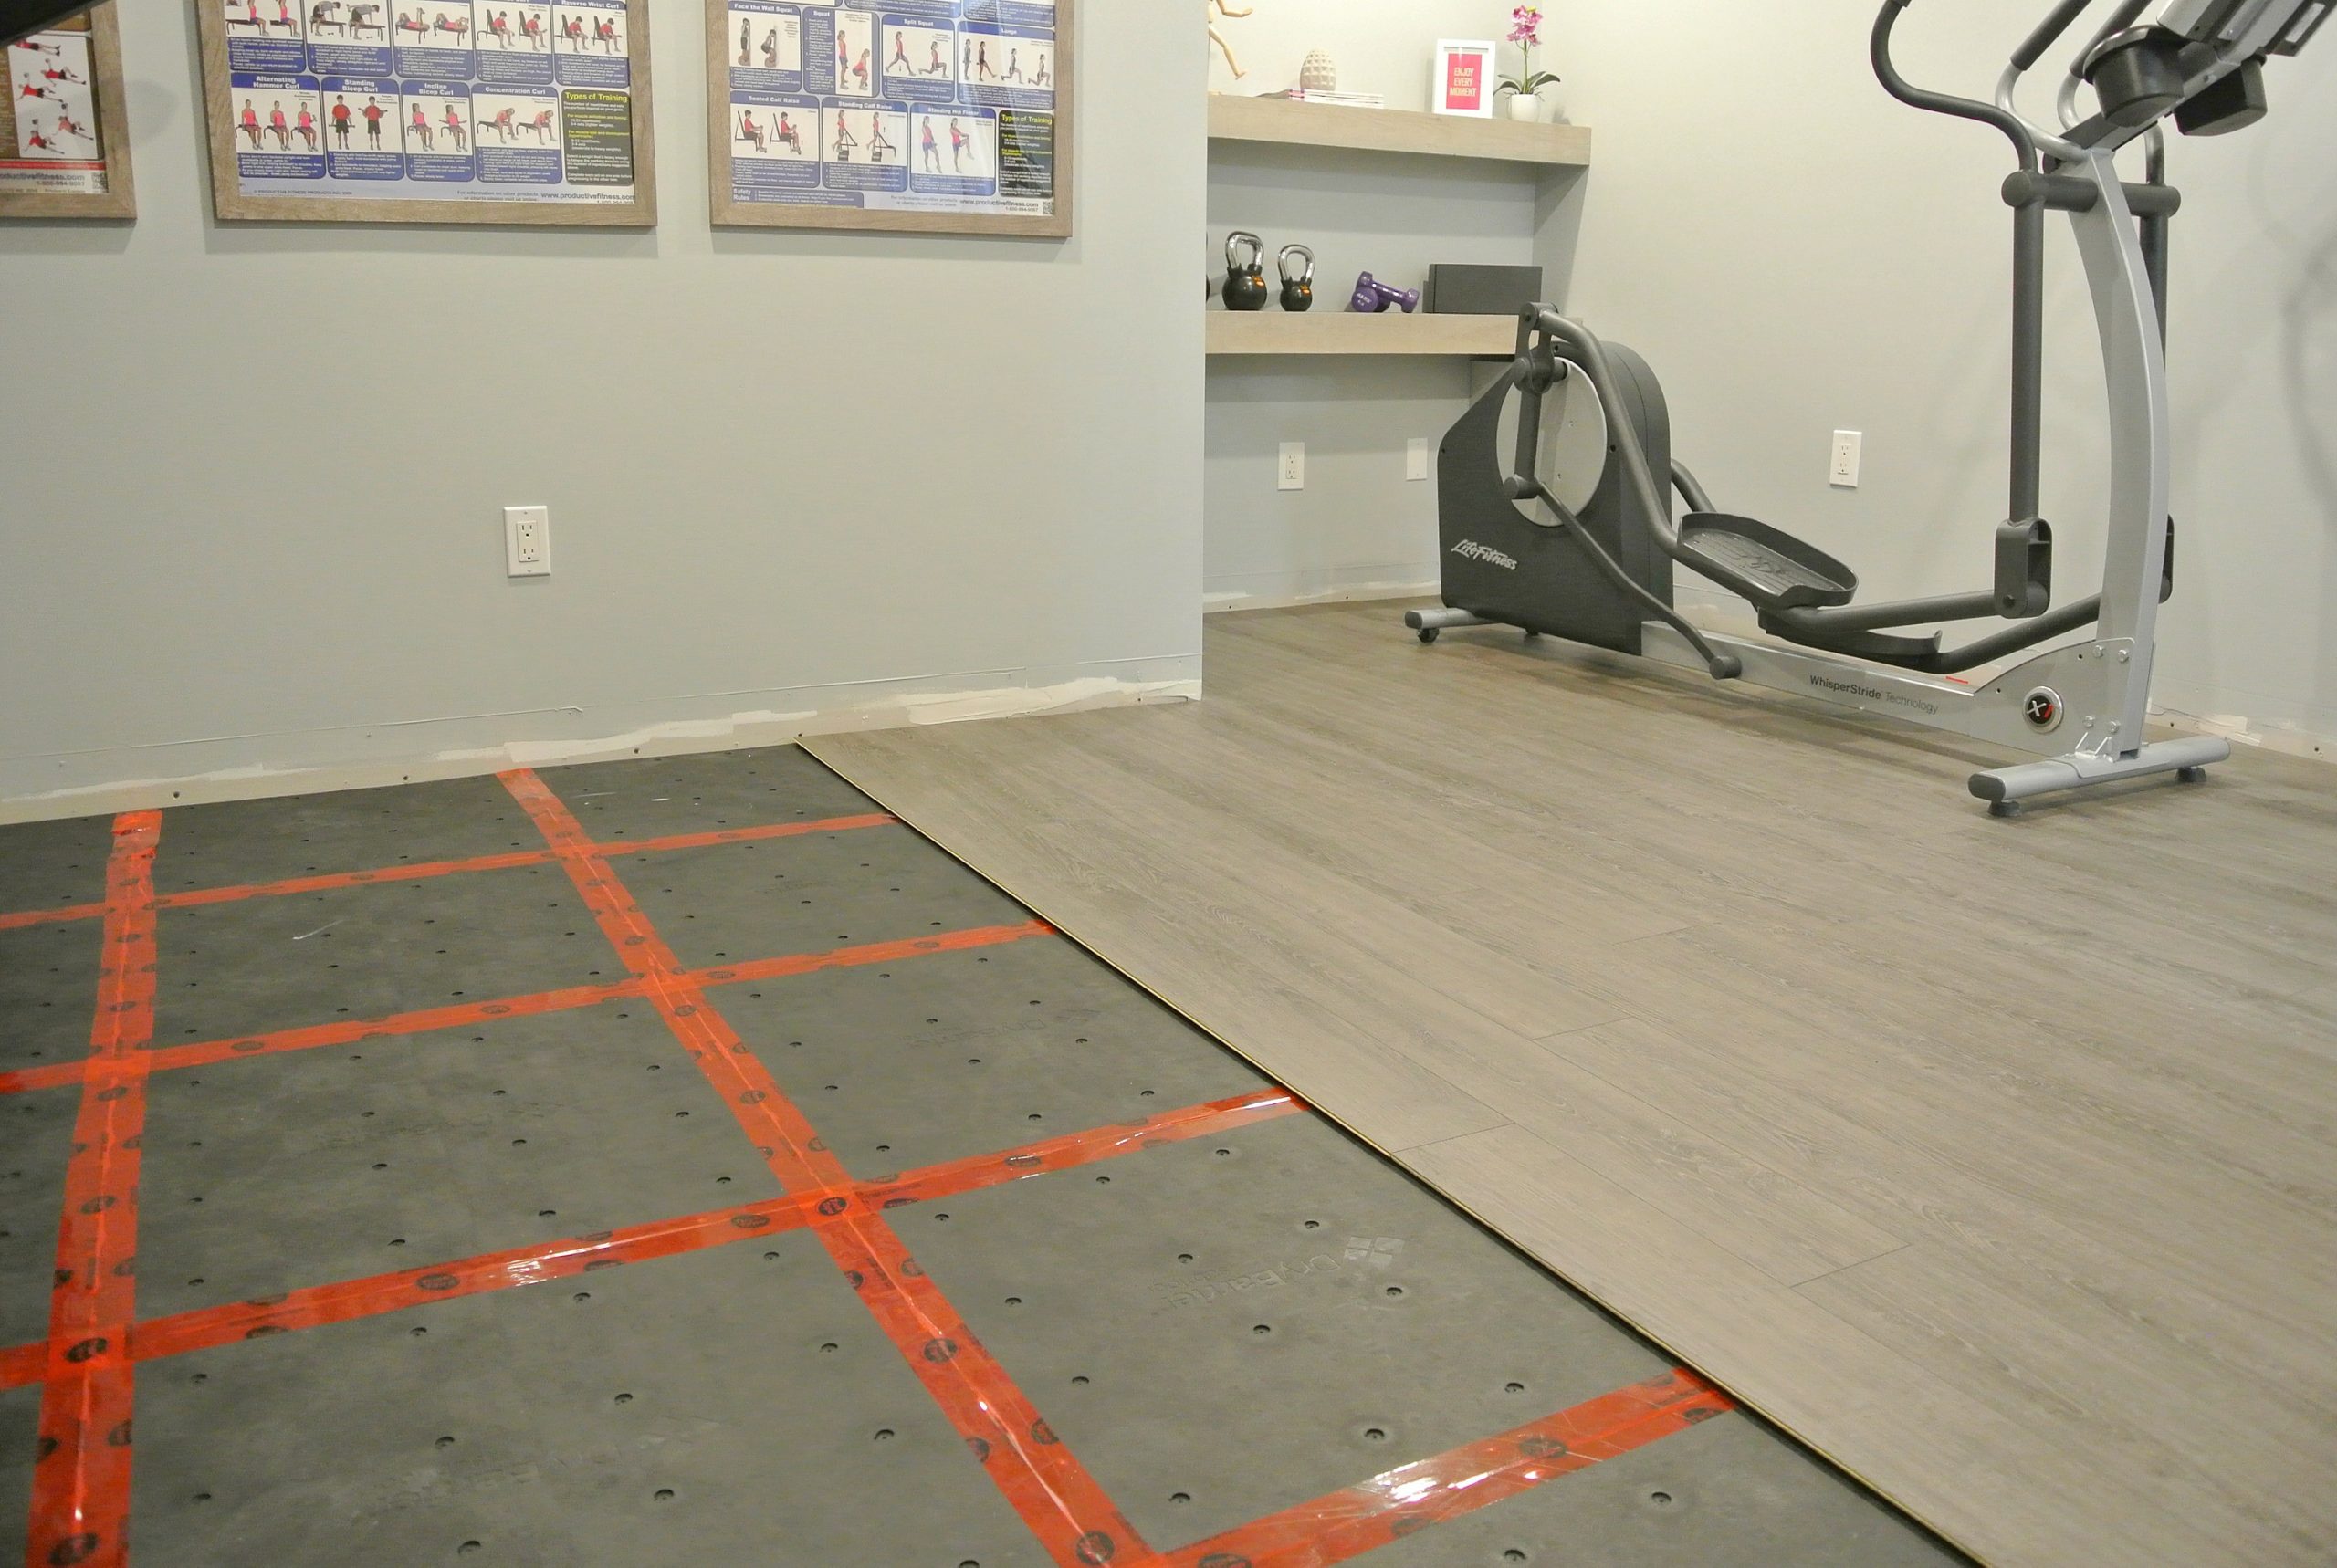 Basement subfloors installed before adding new flooring overtop.